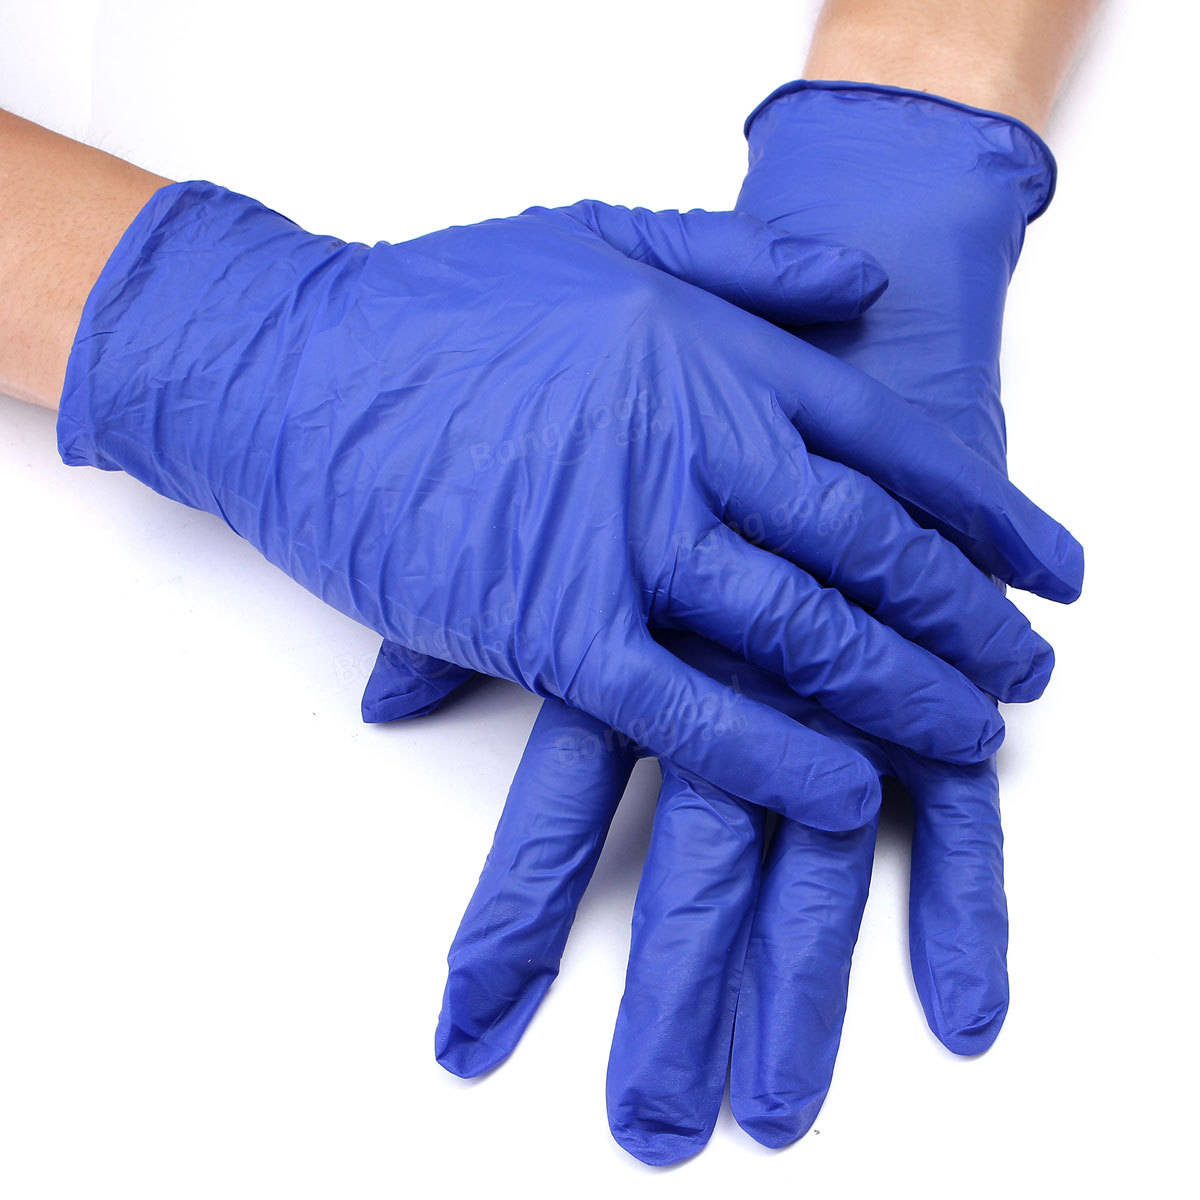 Перчатки эв. Перчатки нитриловые connect Blue Nitrile. Basic Medical перчатки латексные неопудренные. Nitrile Gloves перчатки. Перчатки нитриловые смотровые Disposable Gloves.